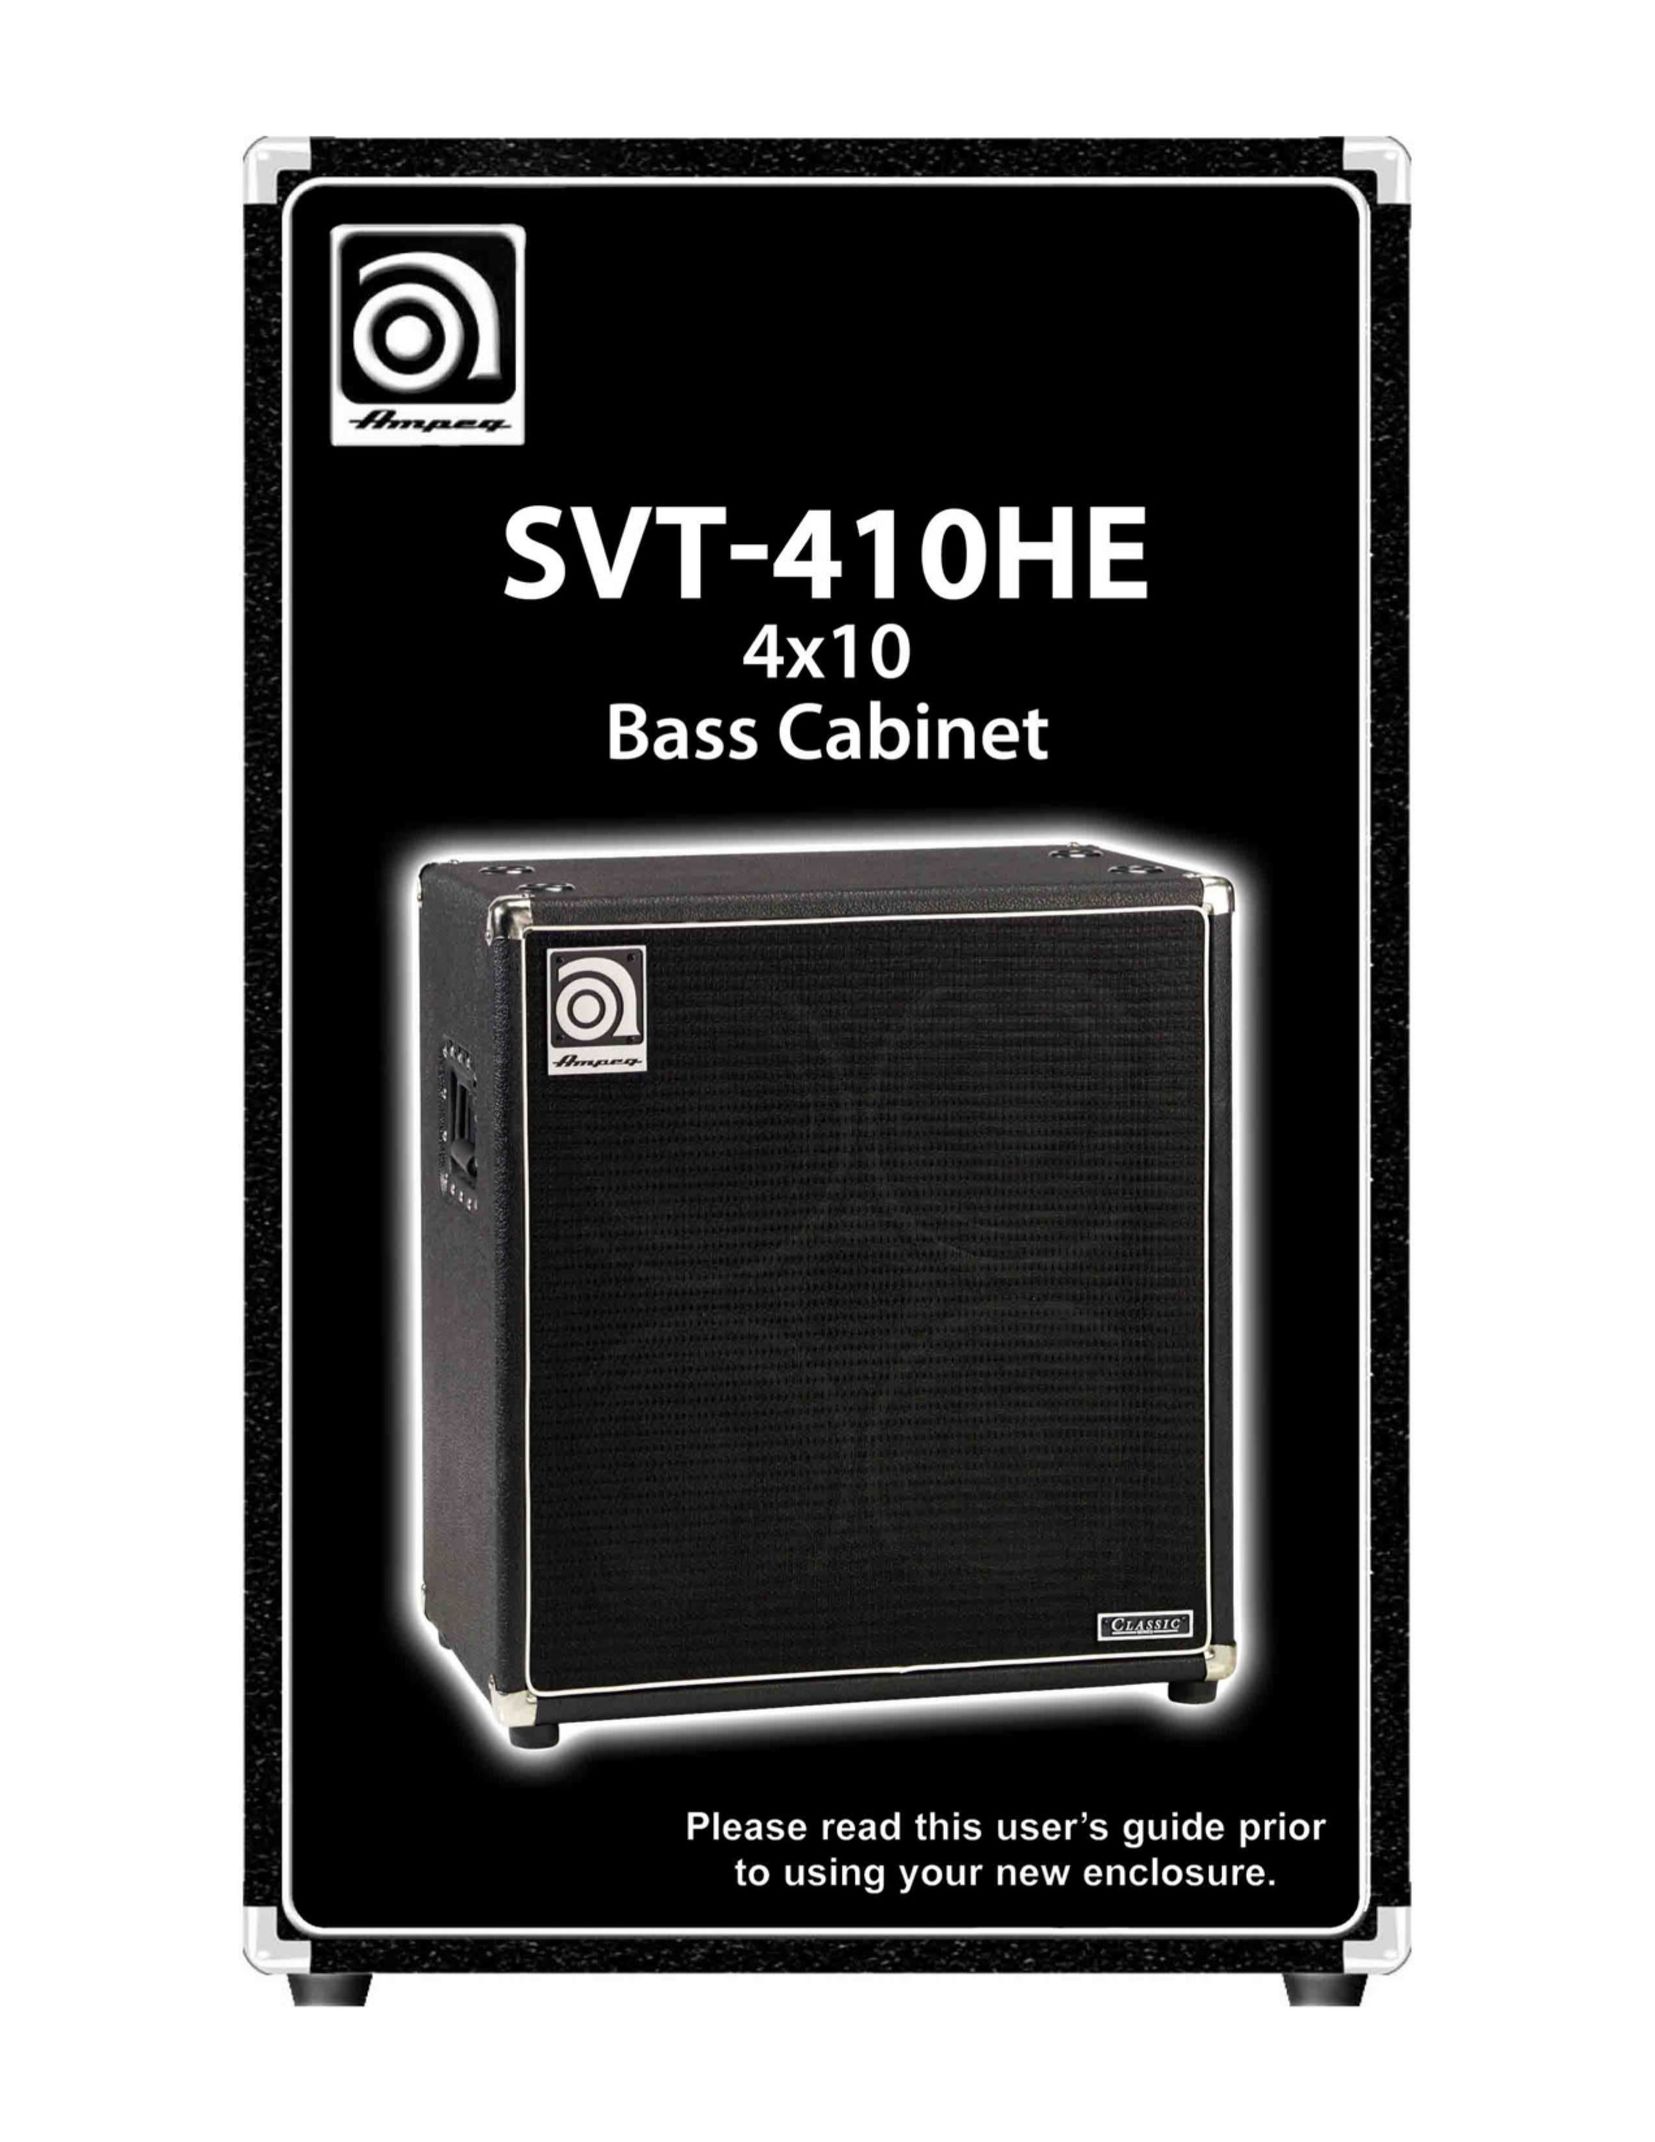 Ampeg SVT-410HE Speaker User Manual